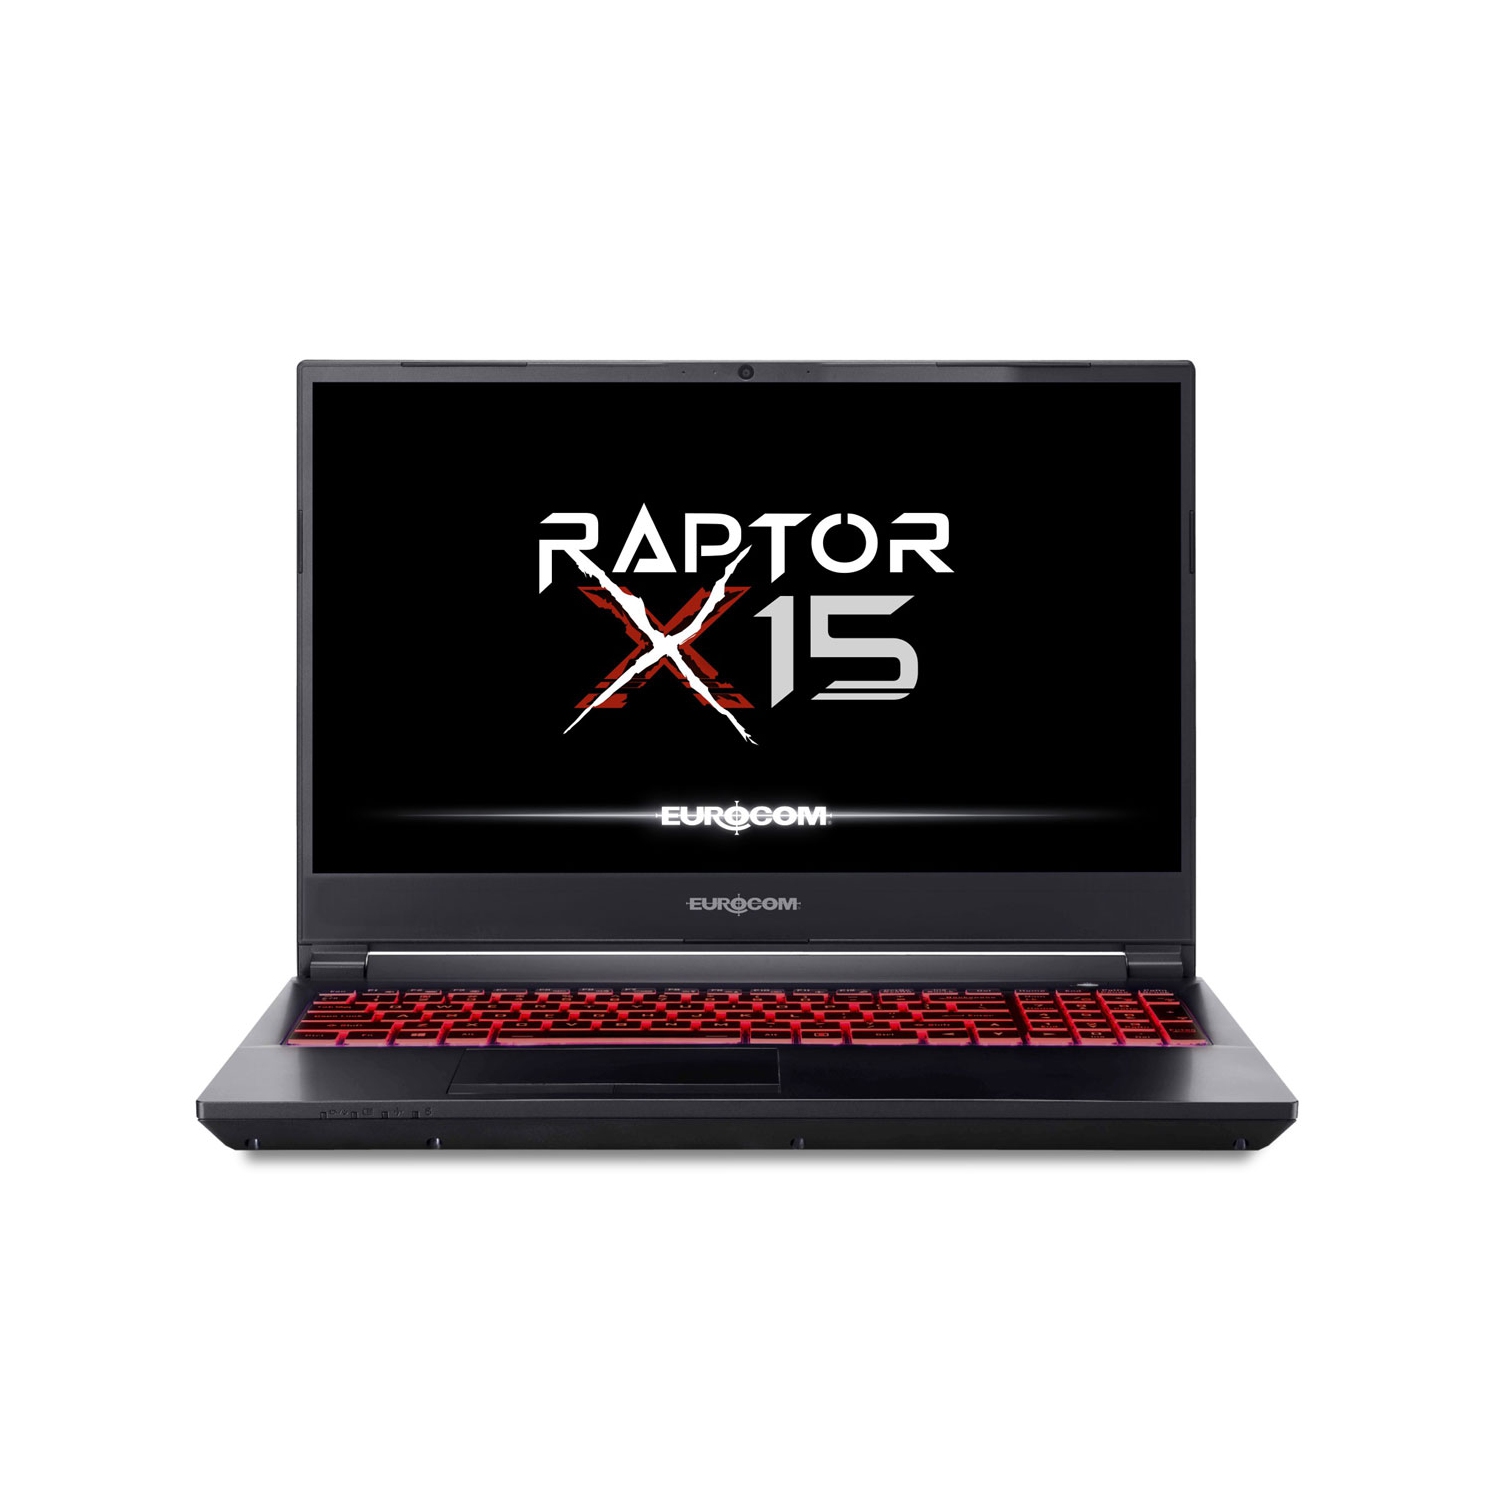 Eurocom Raptor X15 Laptop Computer-Intel i7 12700K/NVidia RTX 3070/500GB SSD/32GB RAM/Windows 11